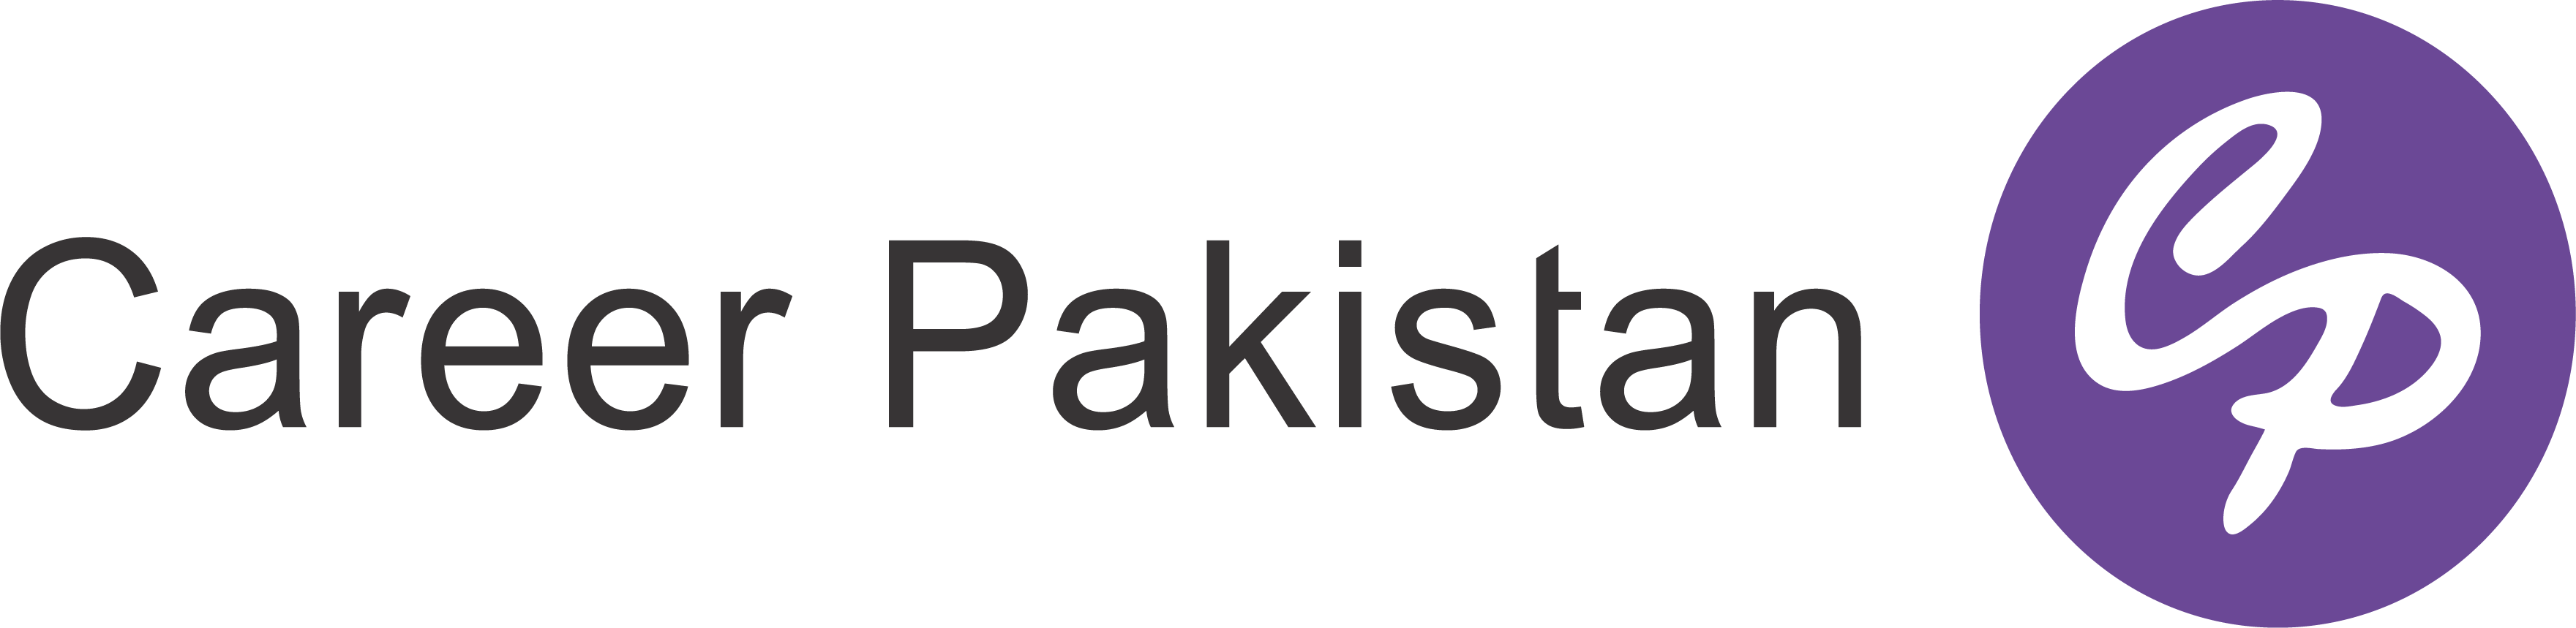 CareerPakistan logo